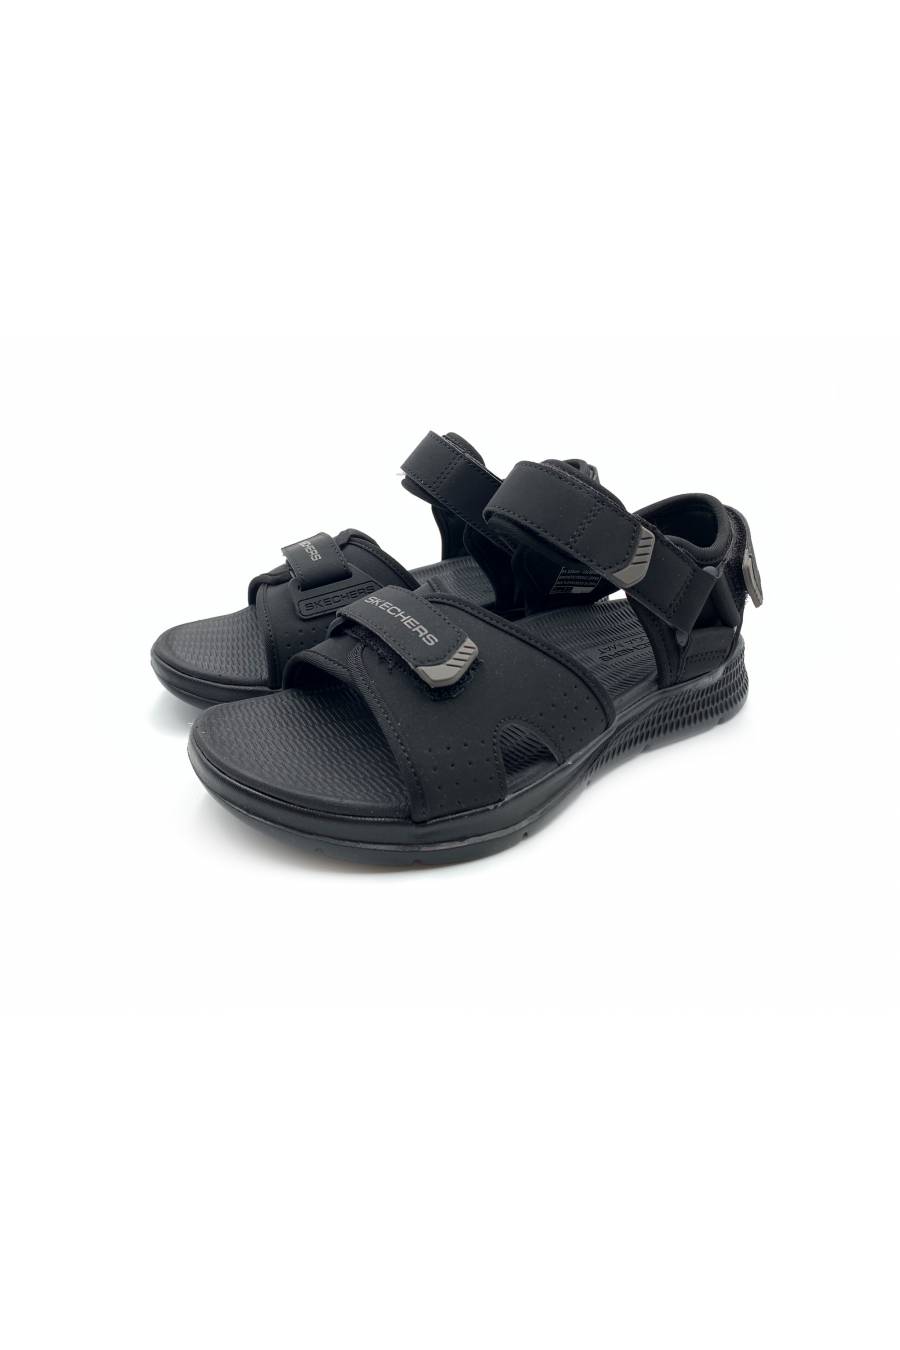 Sandalias Skechers GO Consistent Sandal – Tributary 229097-BBK